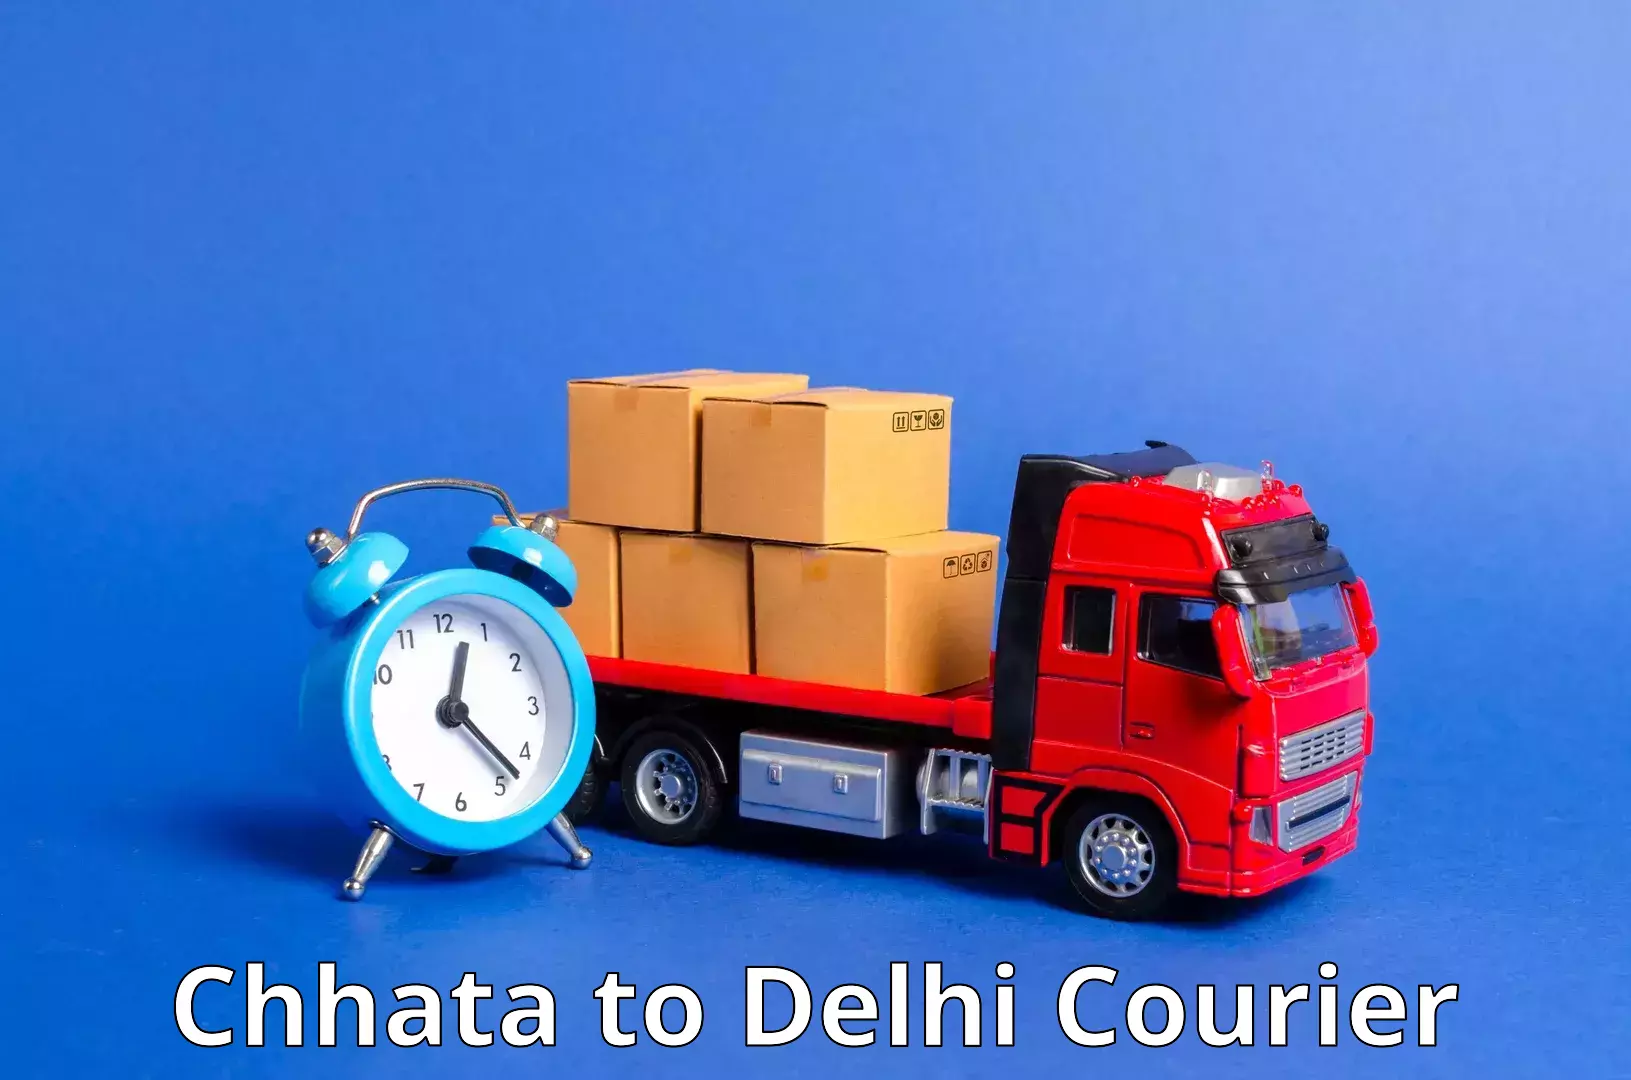 Courier service comparison Chhata to Delhi